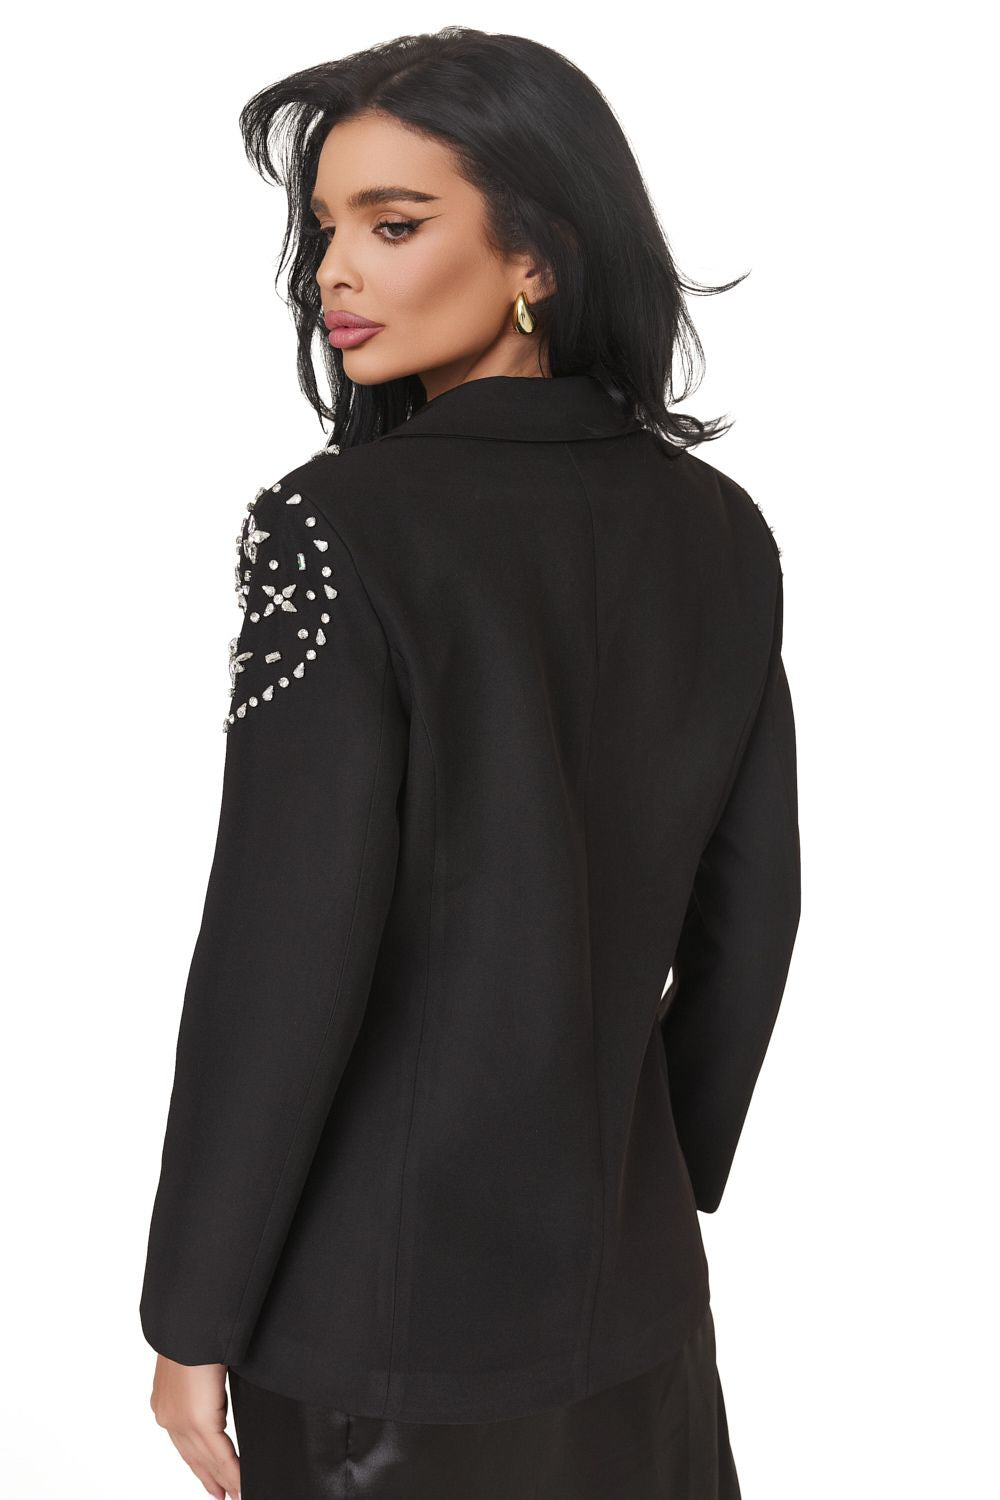 Elegant black ladies jacket Selimesy Bogas